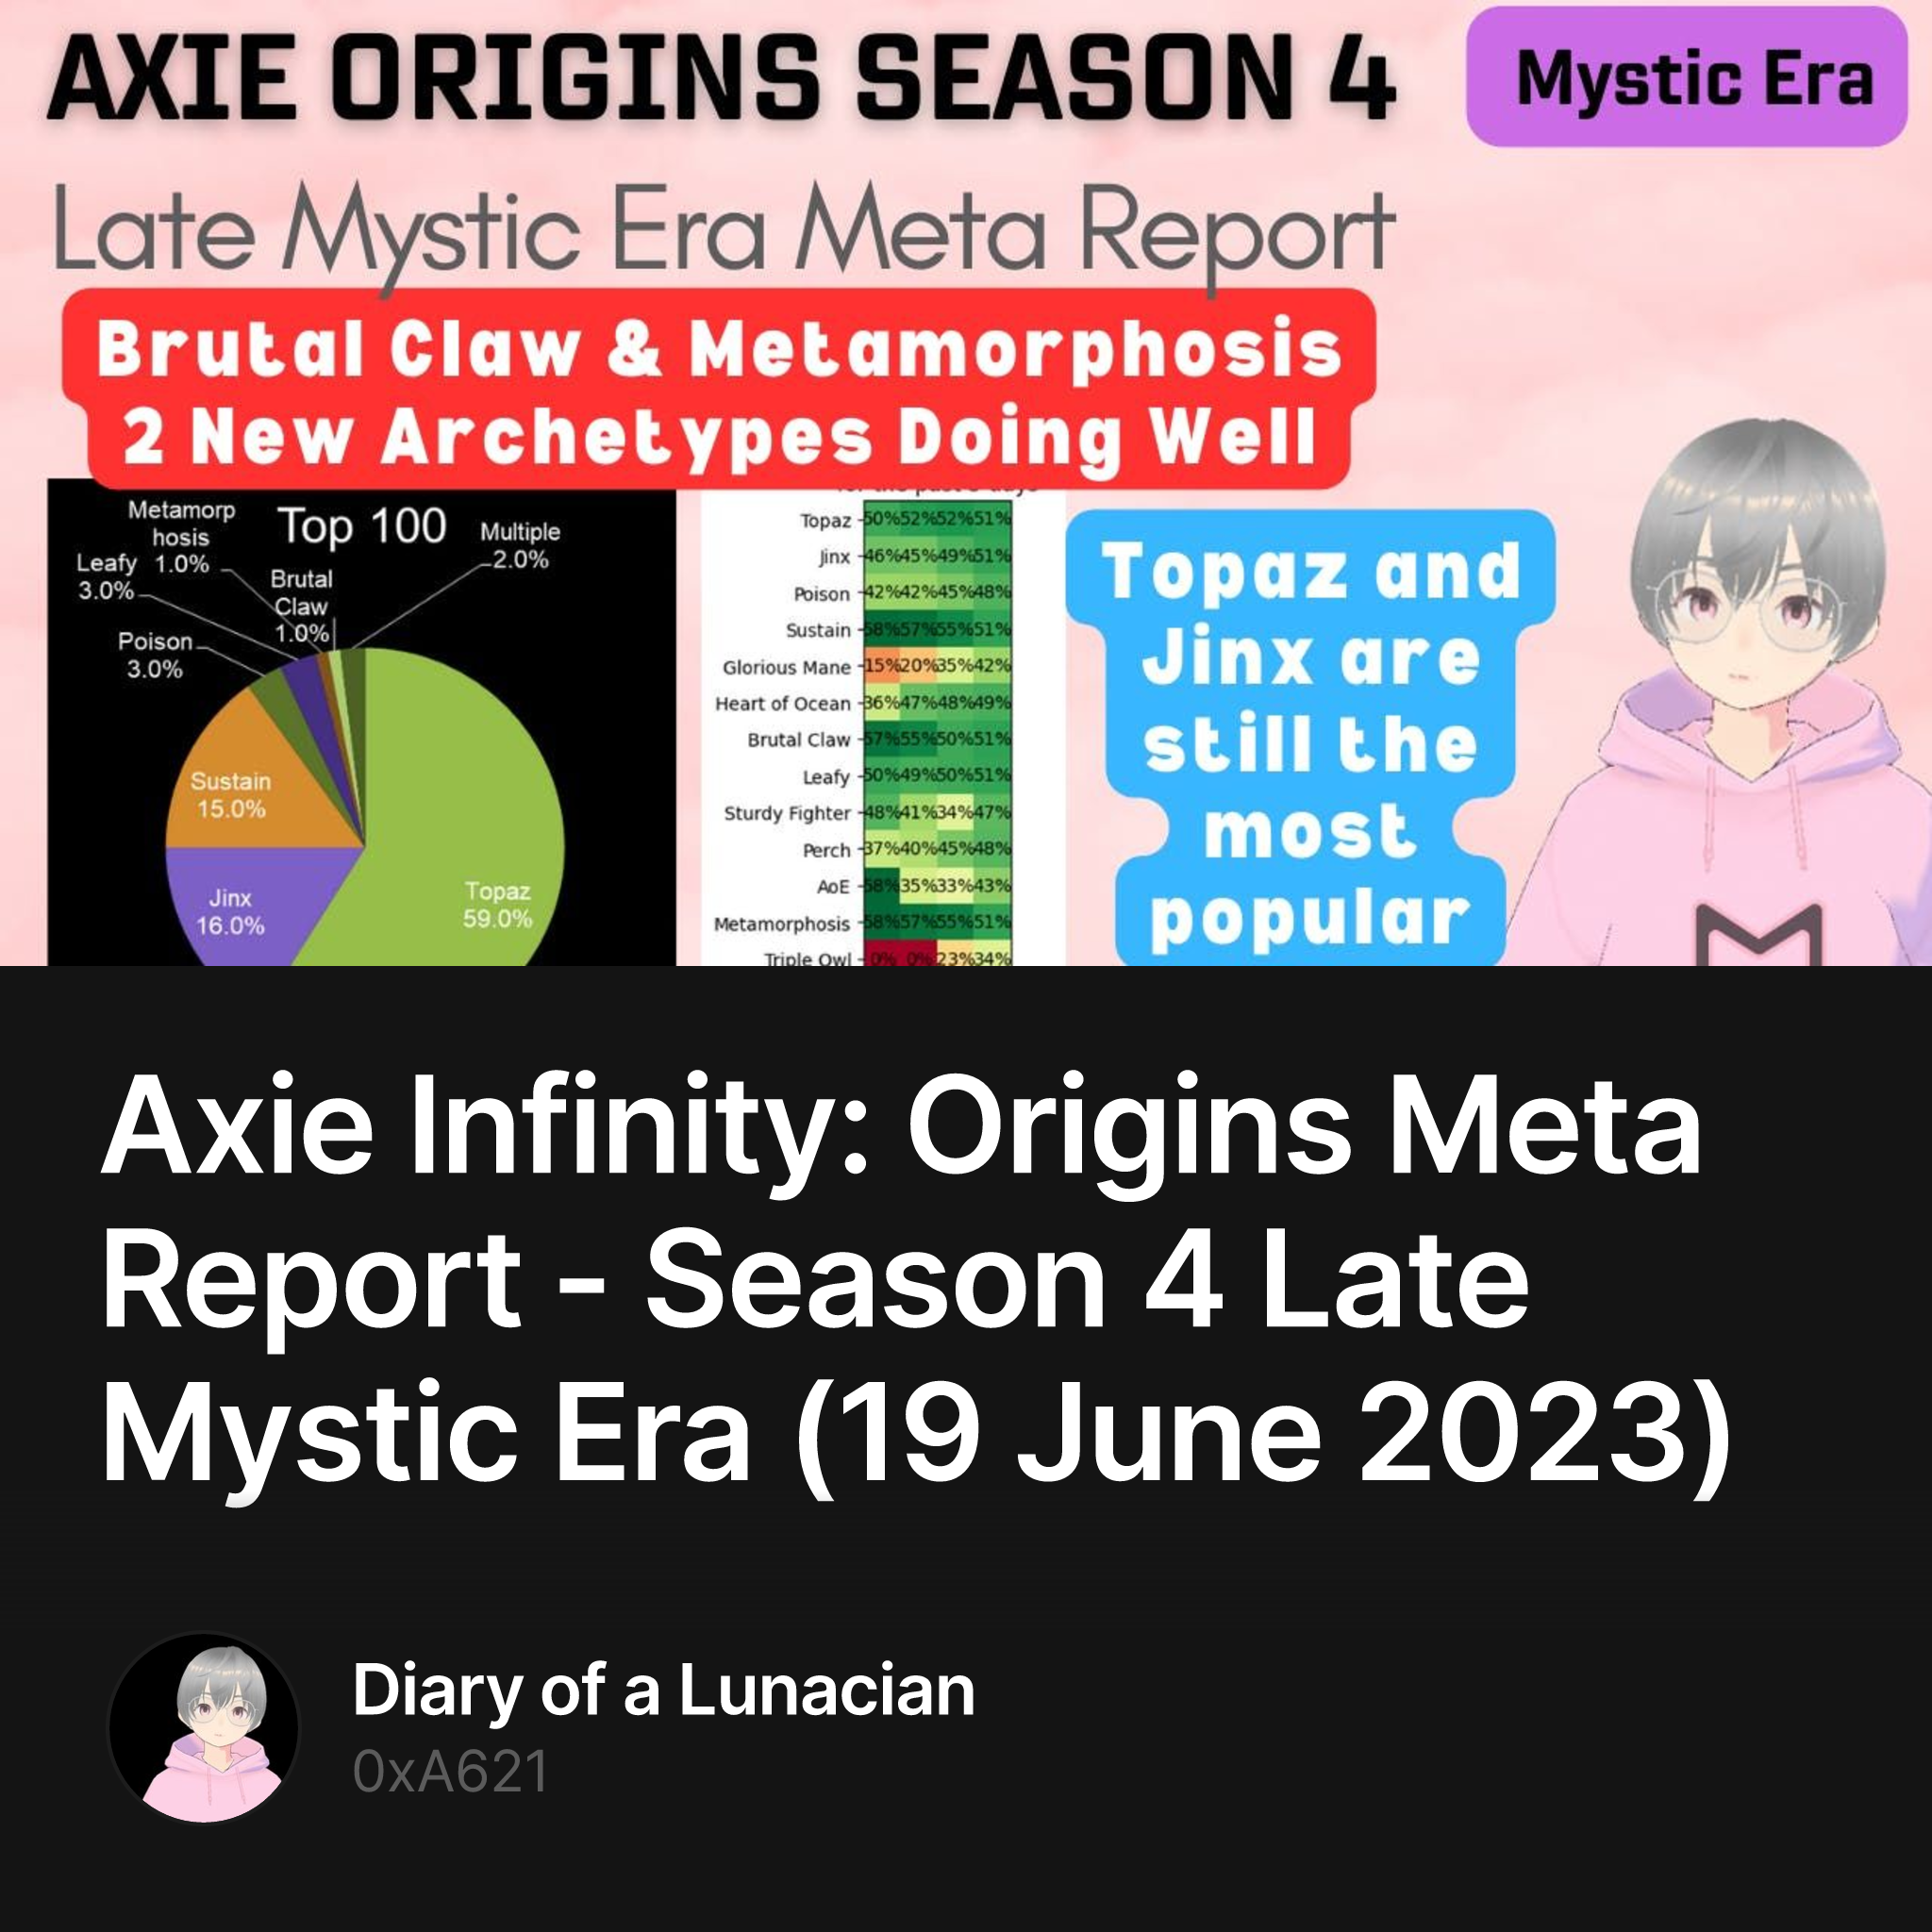 Axie Infinity: Origins Meta Report - Season 4 Late Mystic Era (19 June 2023)